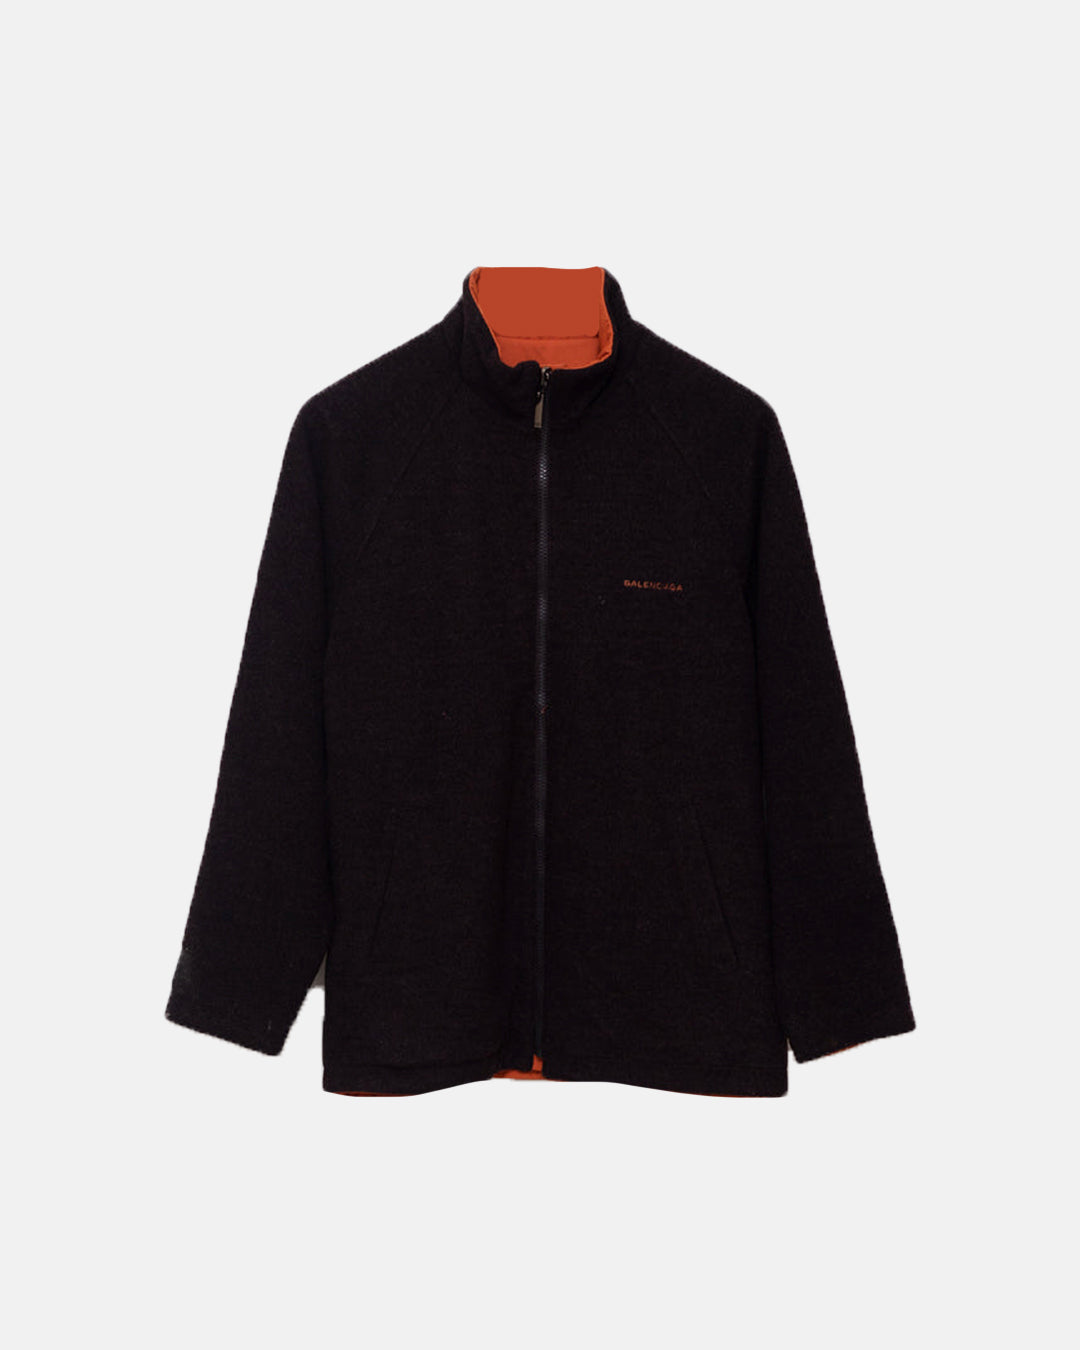 Balenciaga reversible zip up jacket